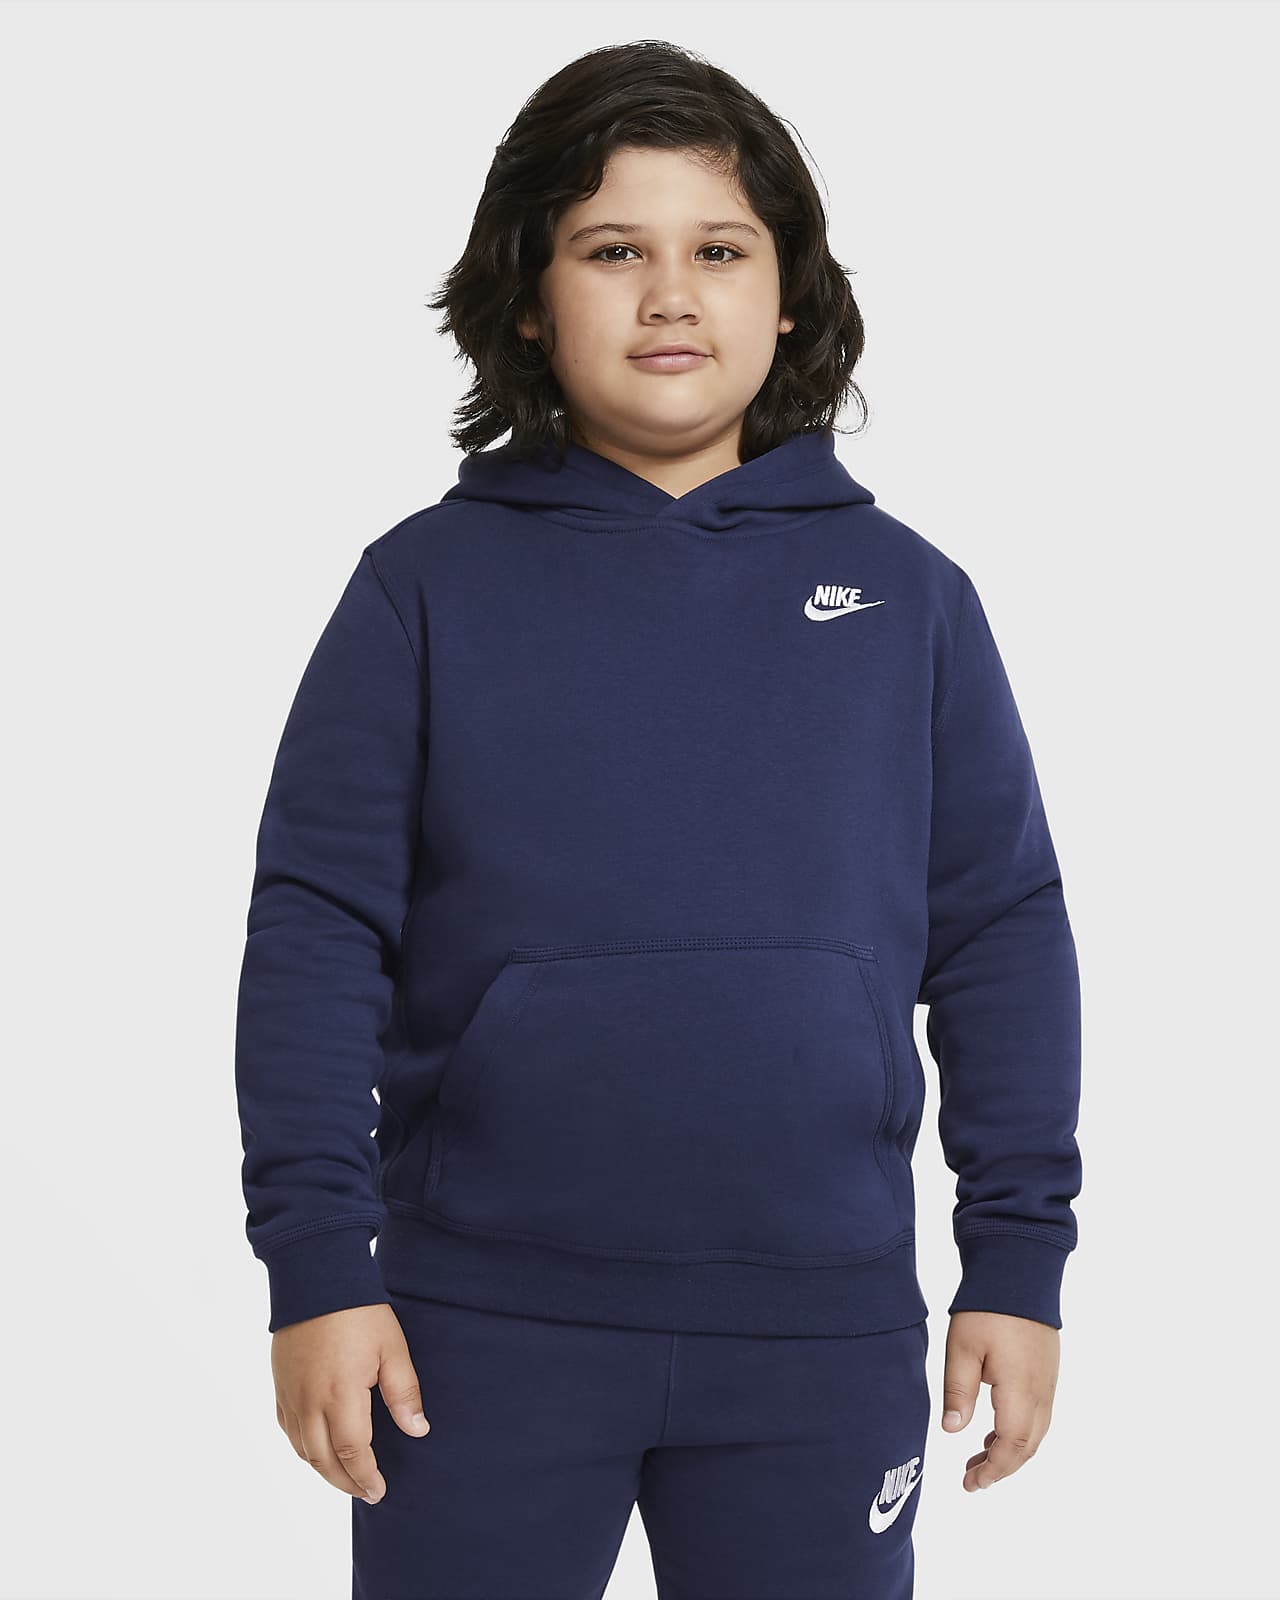 Φούτερ με κουκούλα Nike Sportswear Club για μεγάλα αγόρια (μεγαλύτερο νούμερο)